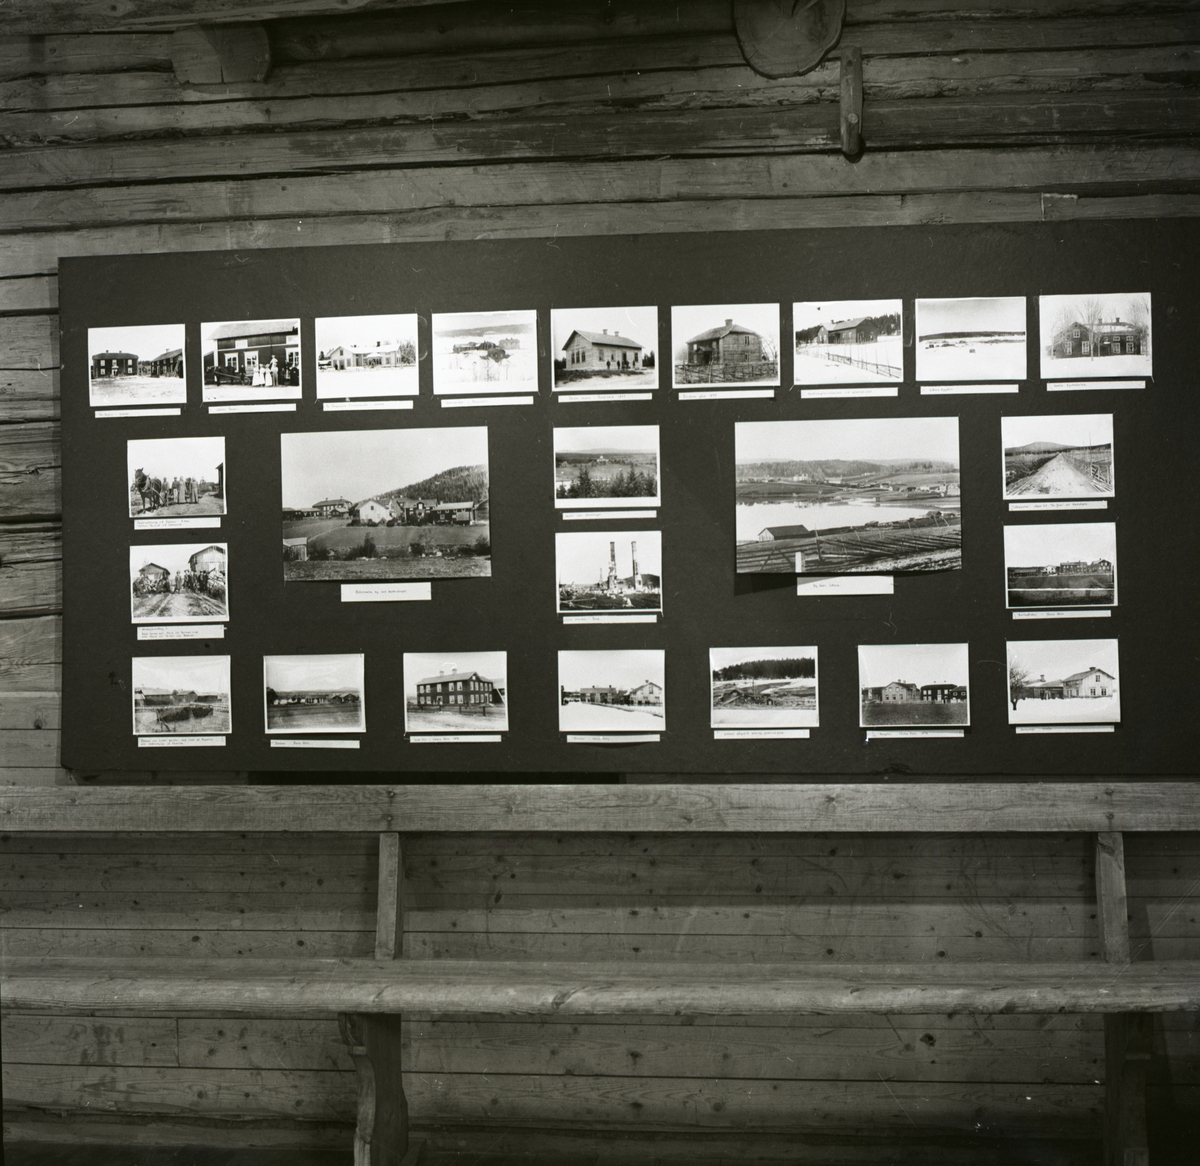 En anslagstavla med fotografier av hus och landsskap ovanför en bänk, 1986.